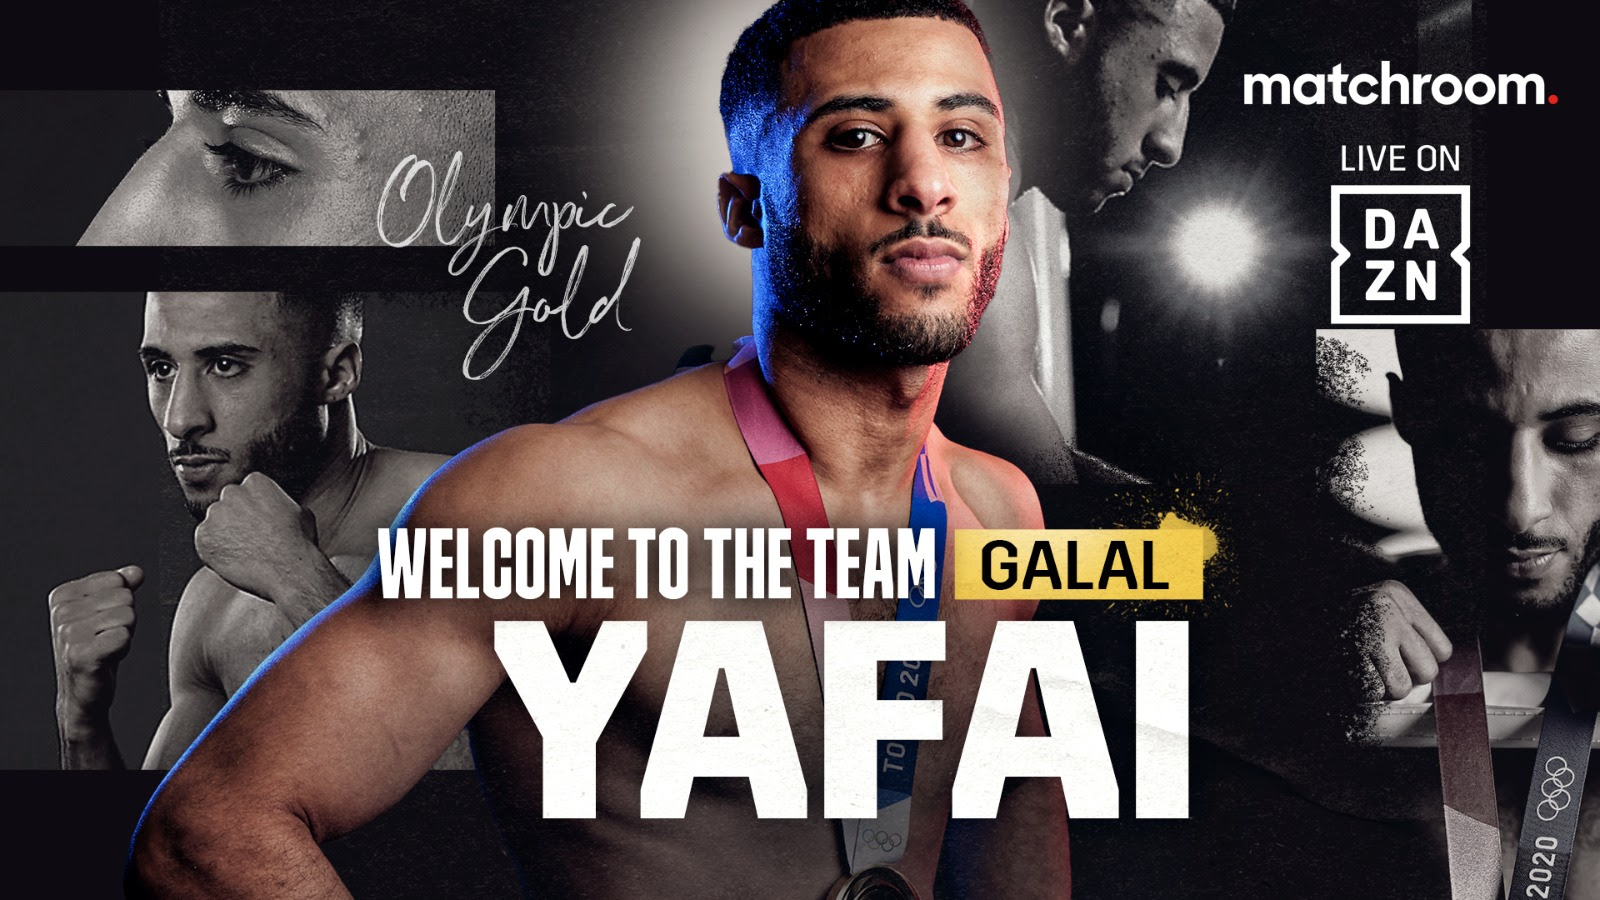 Galal Yafai boxing image / photo